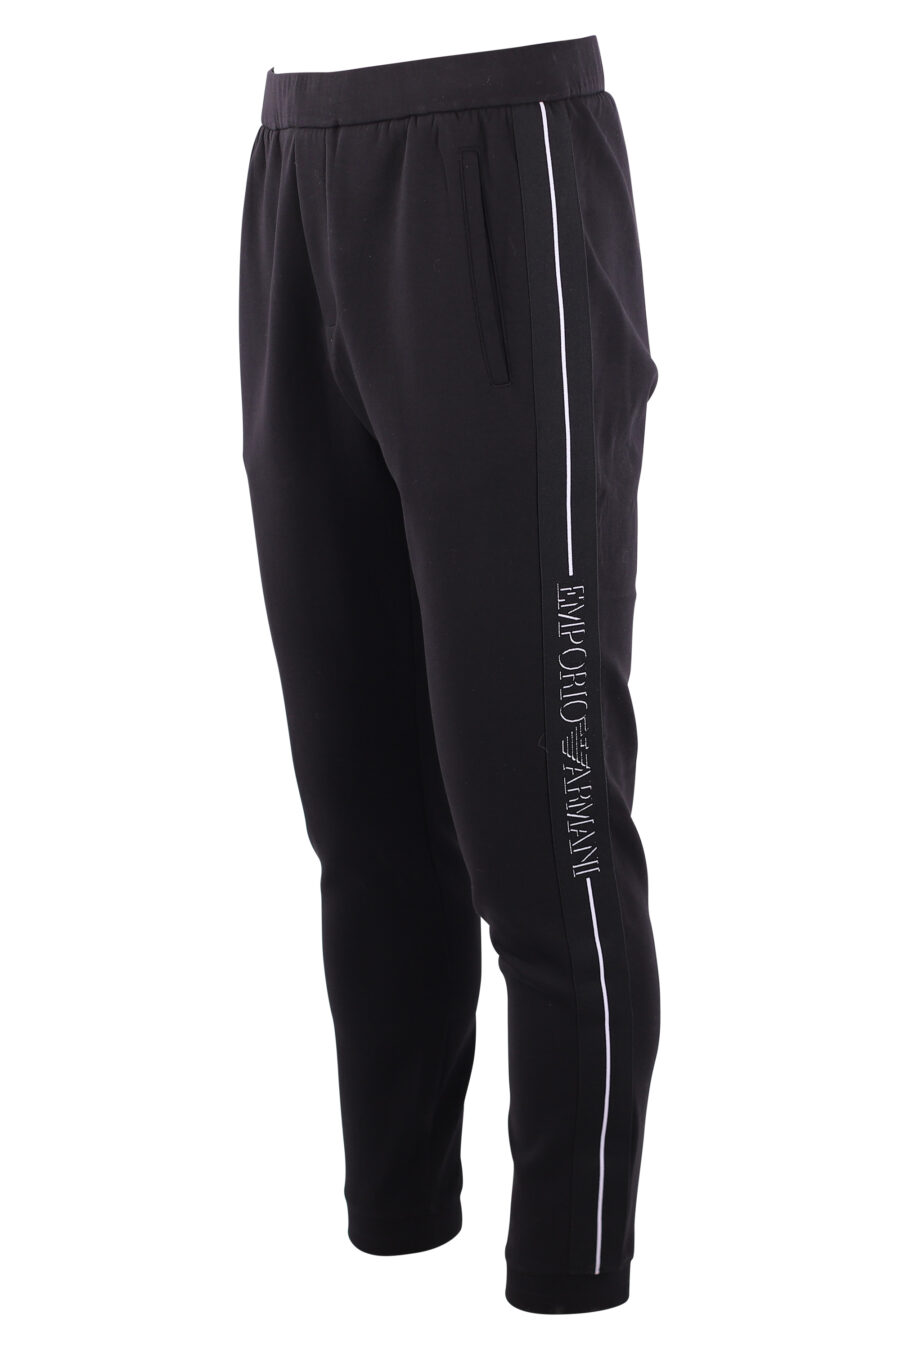 Pantalón de chándal negro con logo vertical lateral - IMG 3167 copia